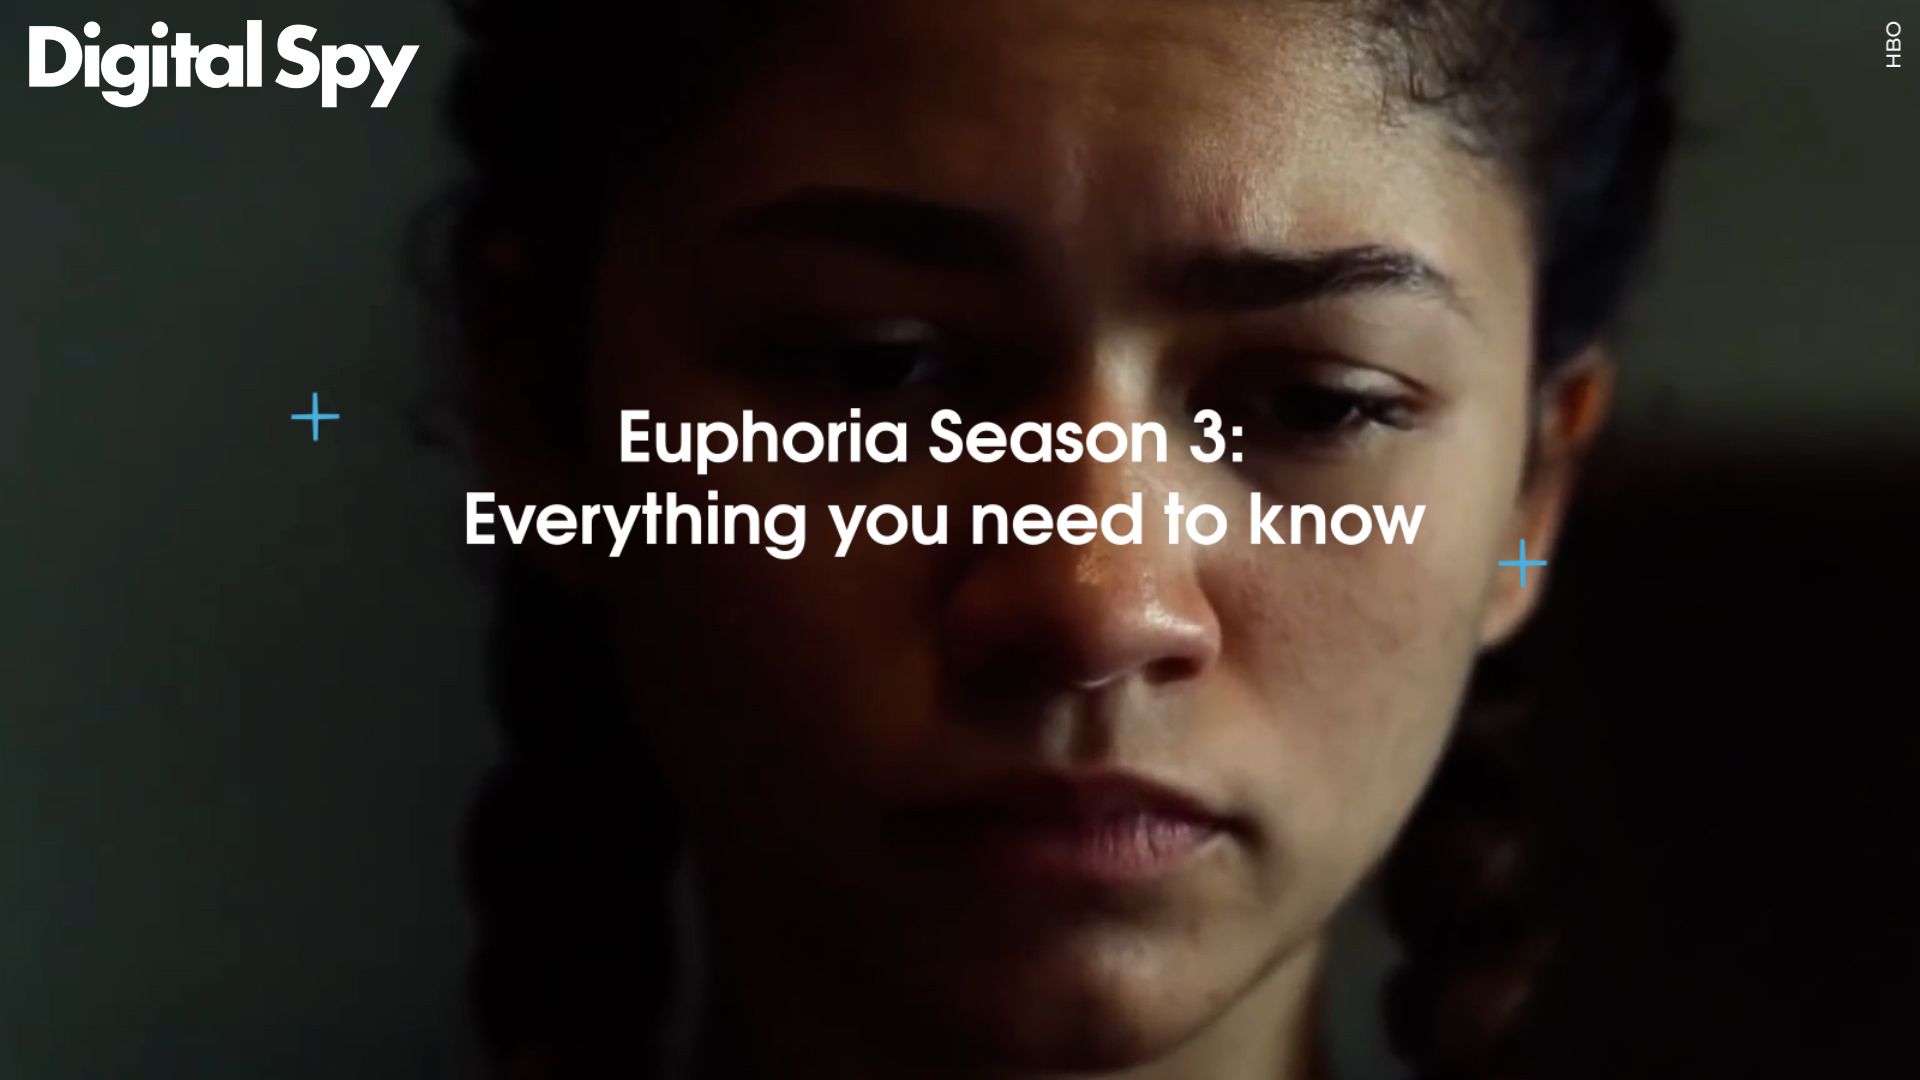 Euphoria Season 3: Everything we know so far - Dexerto